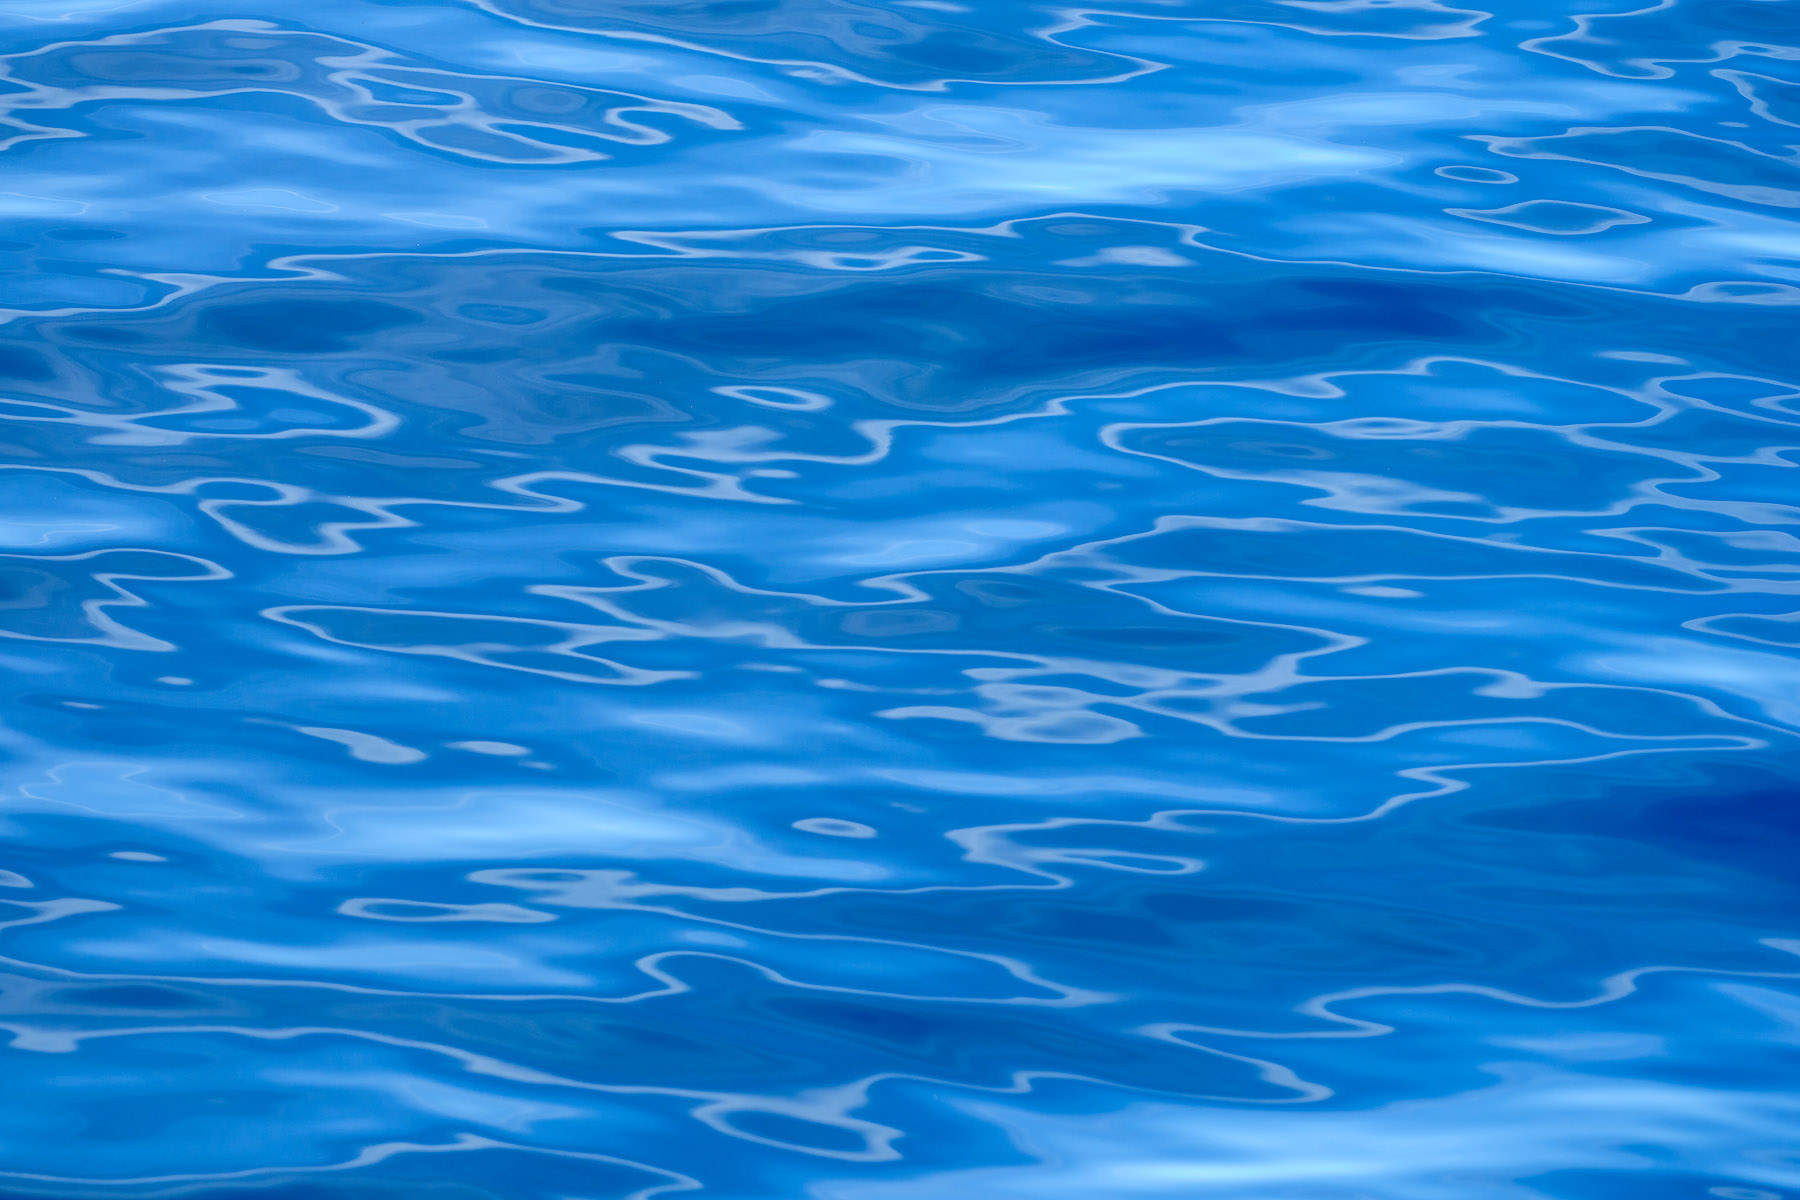 dark blue ocean water